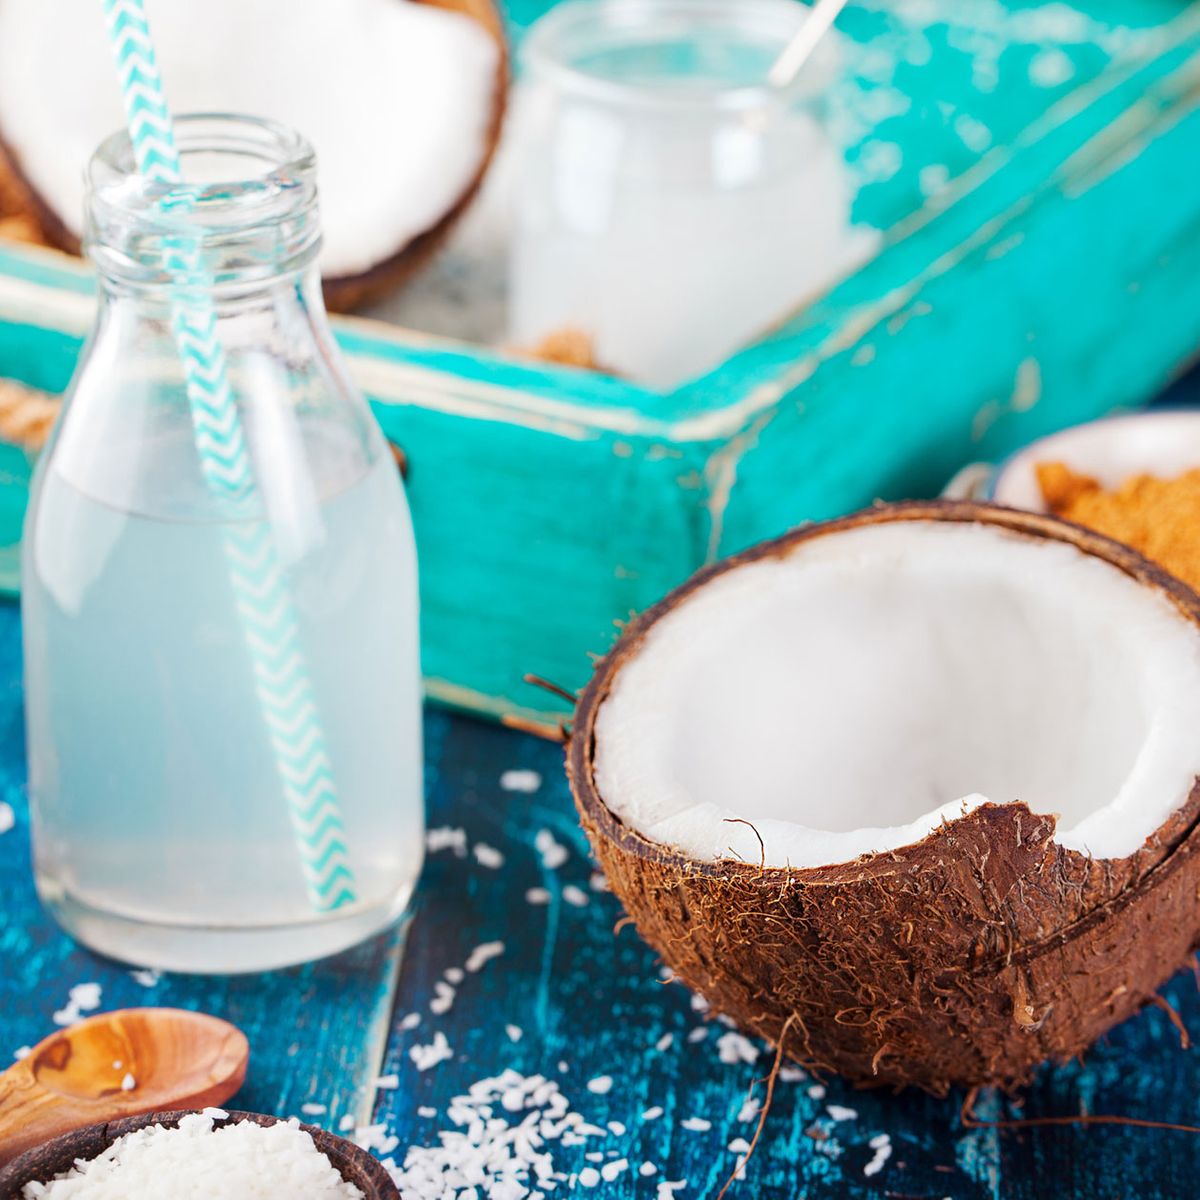 Das schmeckt nach Sommer! 6 Gründe, weshalb Kokoswasser so gesund ist